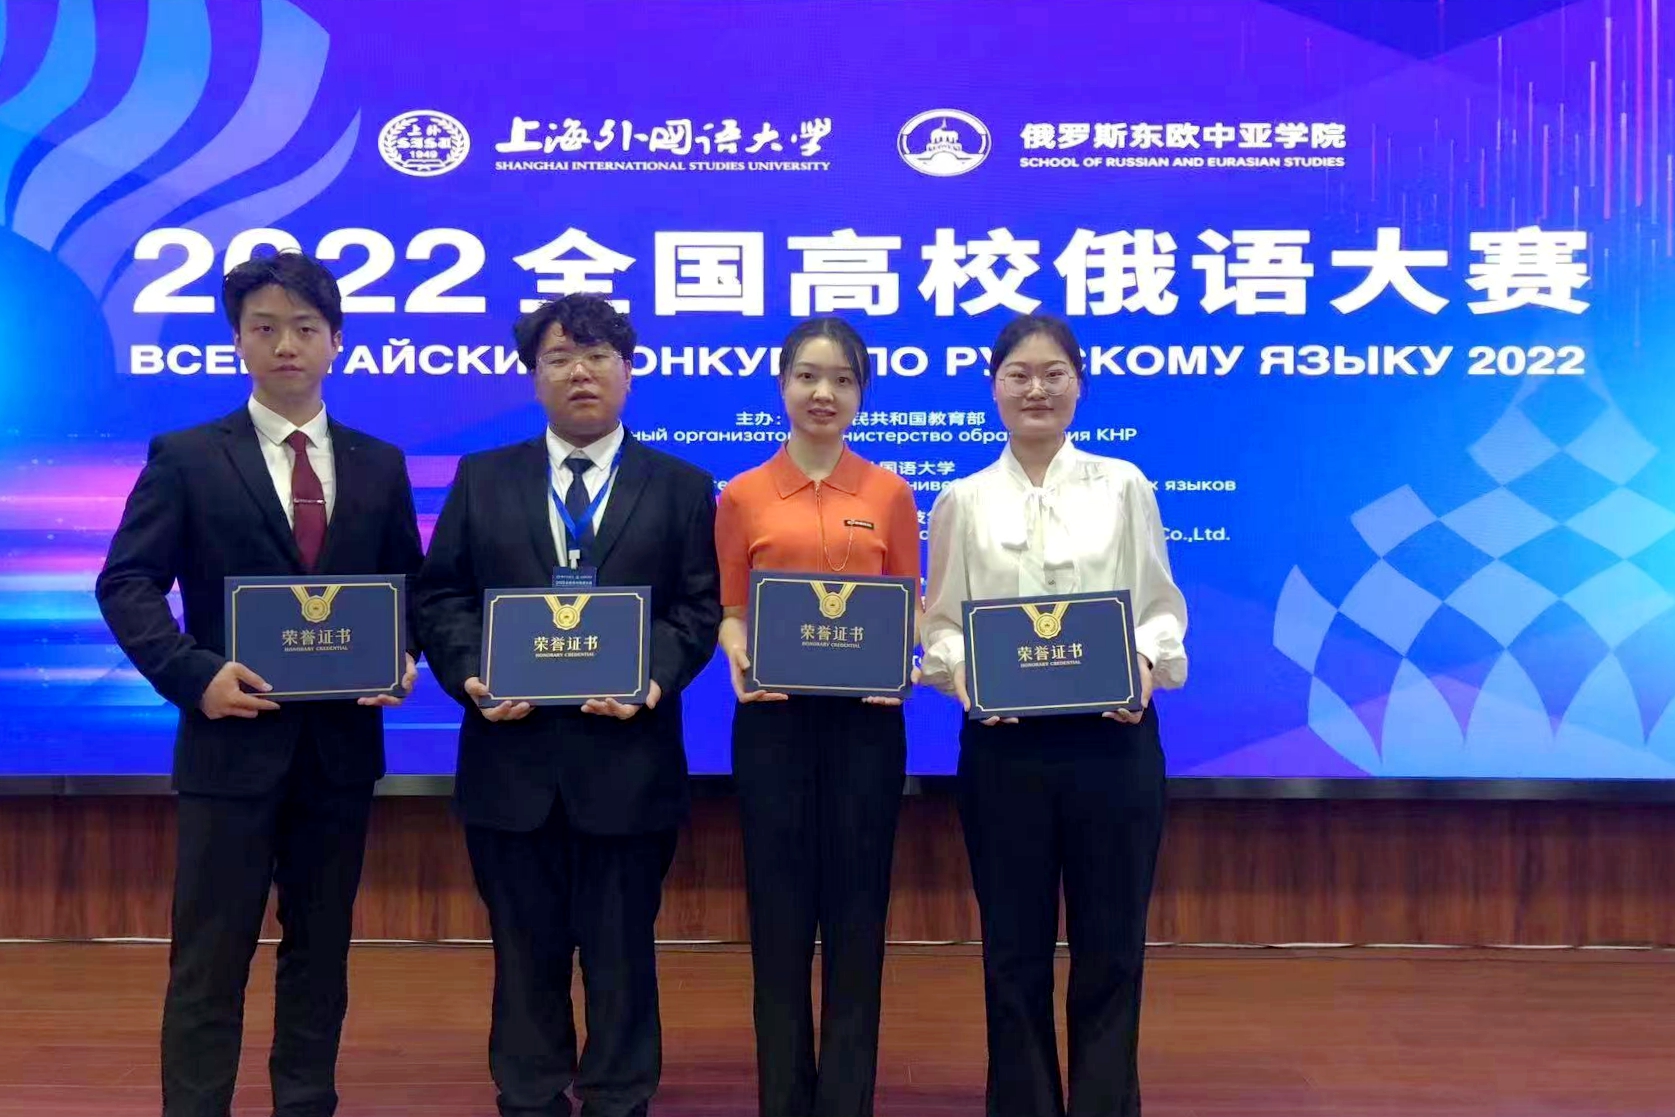 黑龙江大学在2022全国高校俄语大赛中喜获佳绩